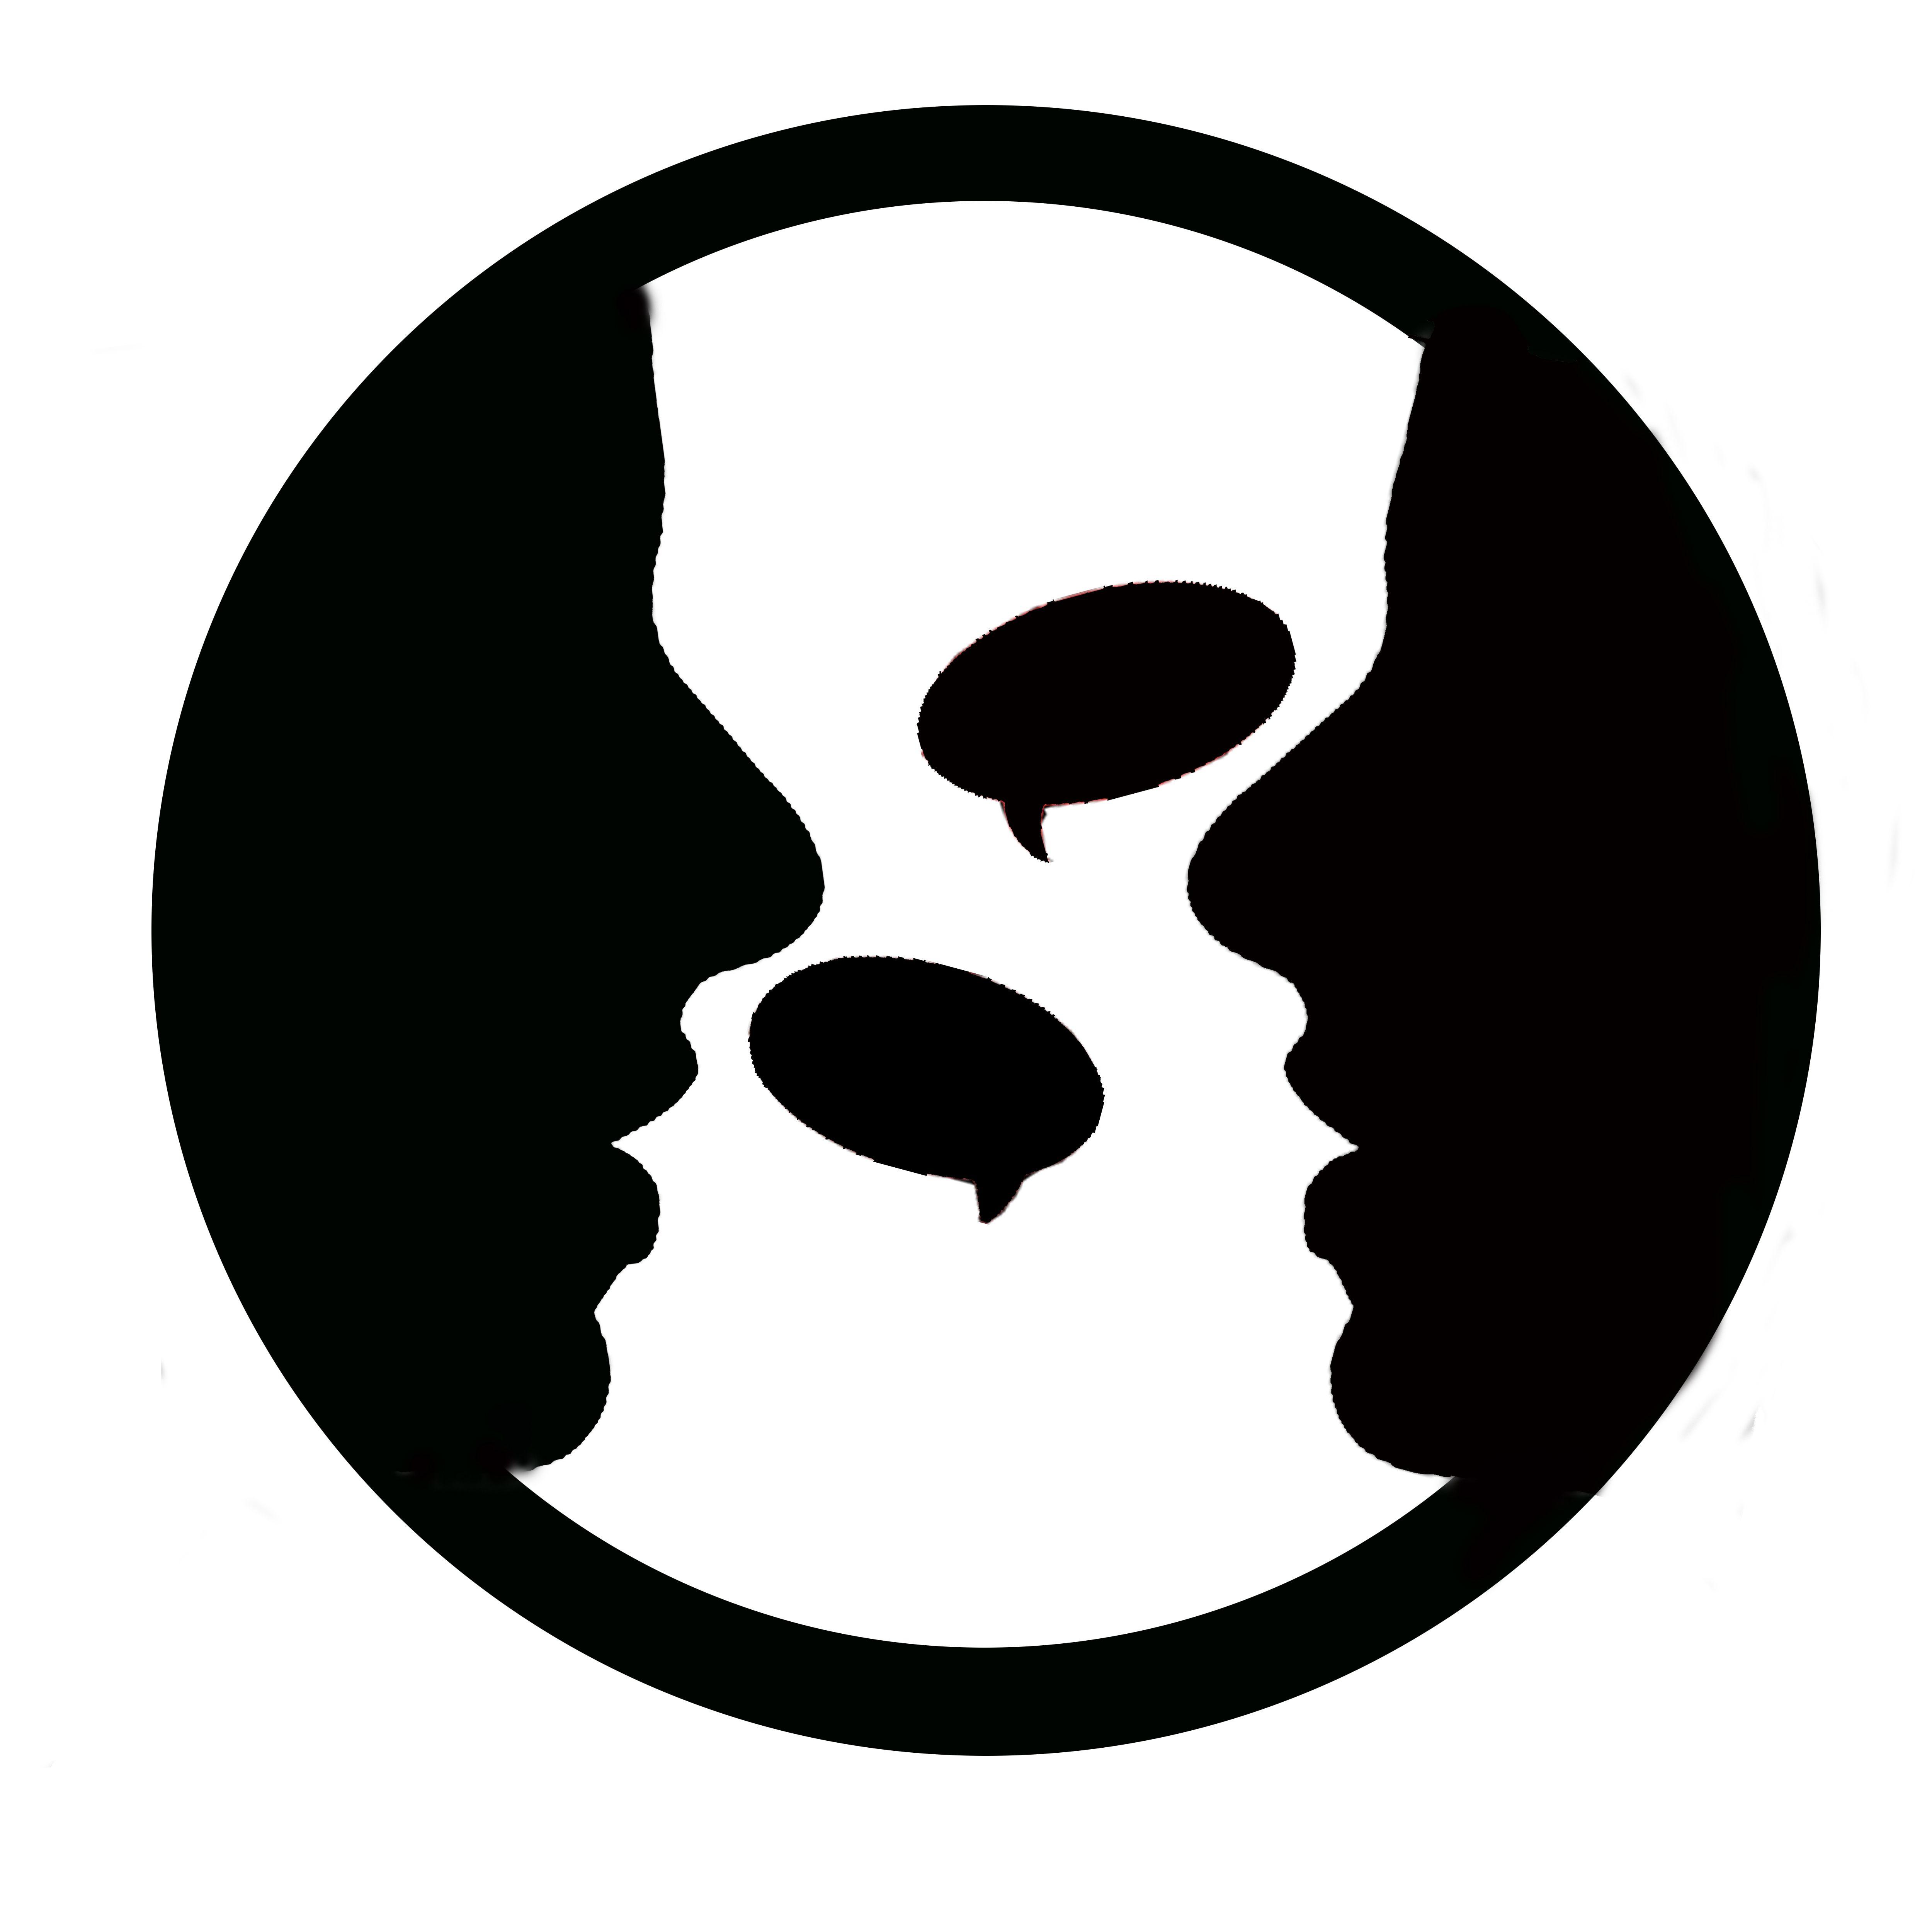 2 Black F Logo - File:Two-people-talking-logo.jpg - Wikimedia Commons